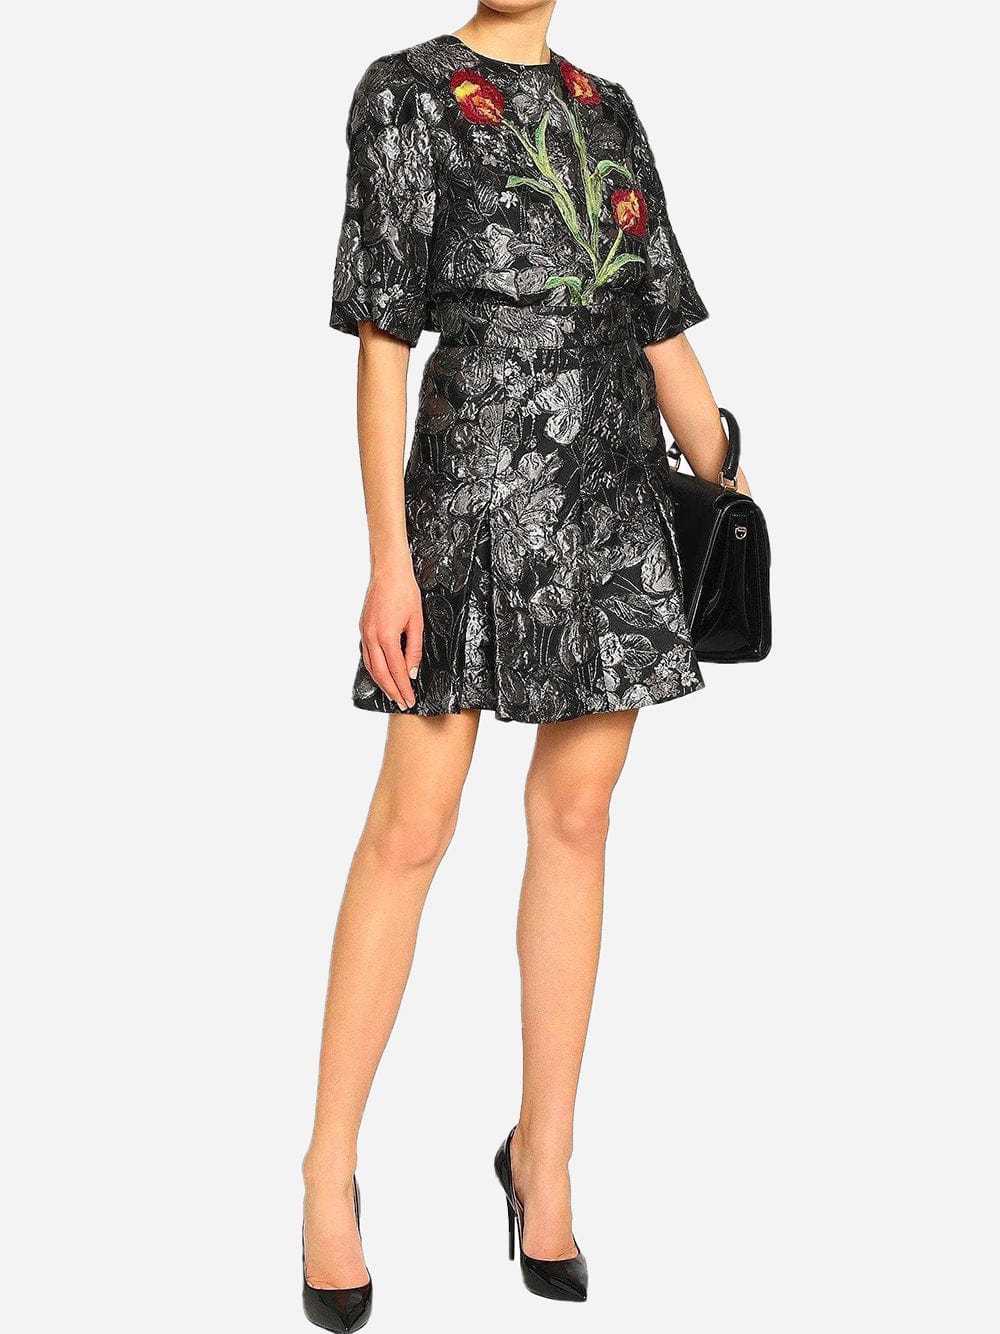 Dolce & Gabbana Brocade Floral Skirt